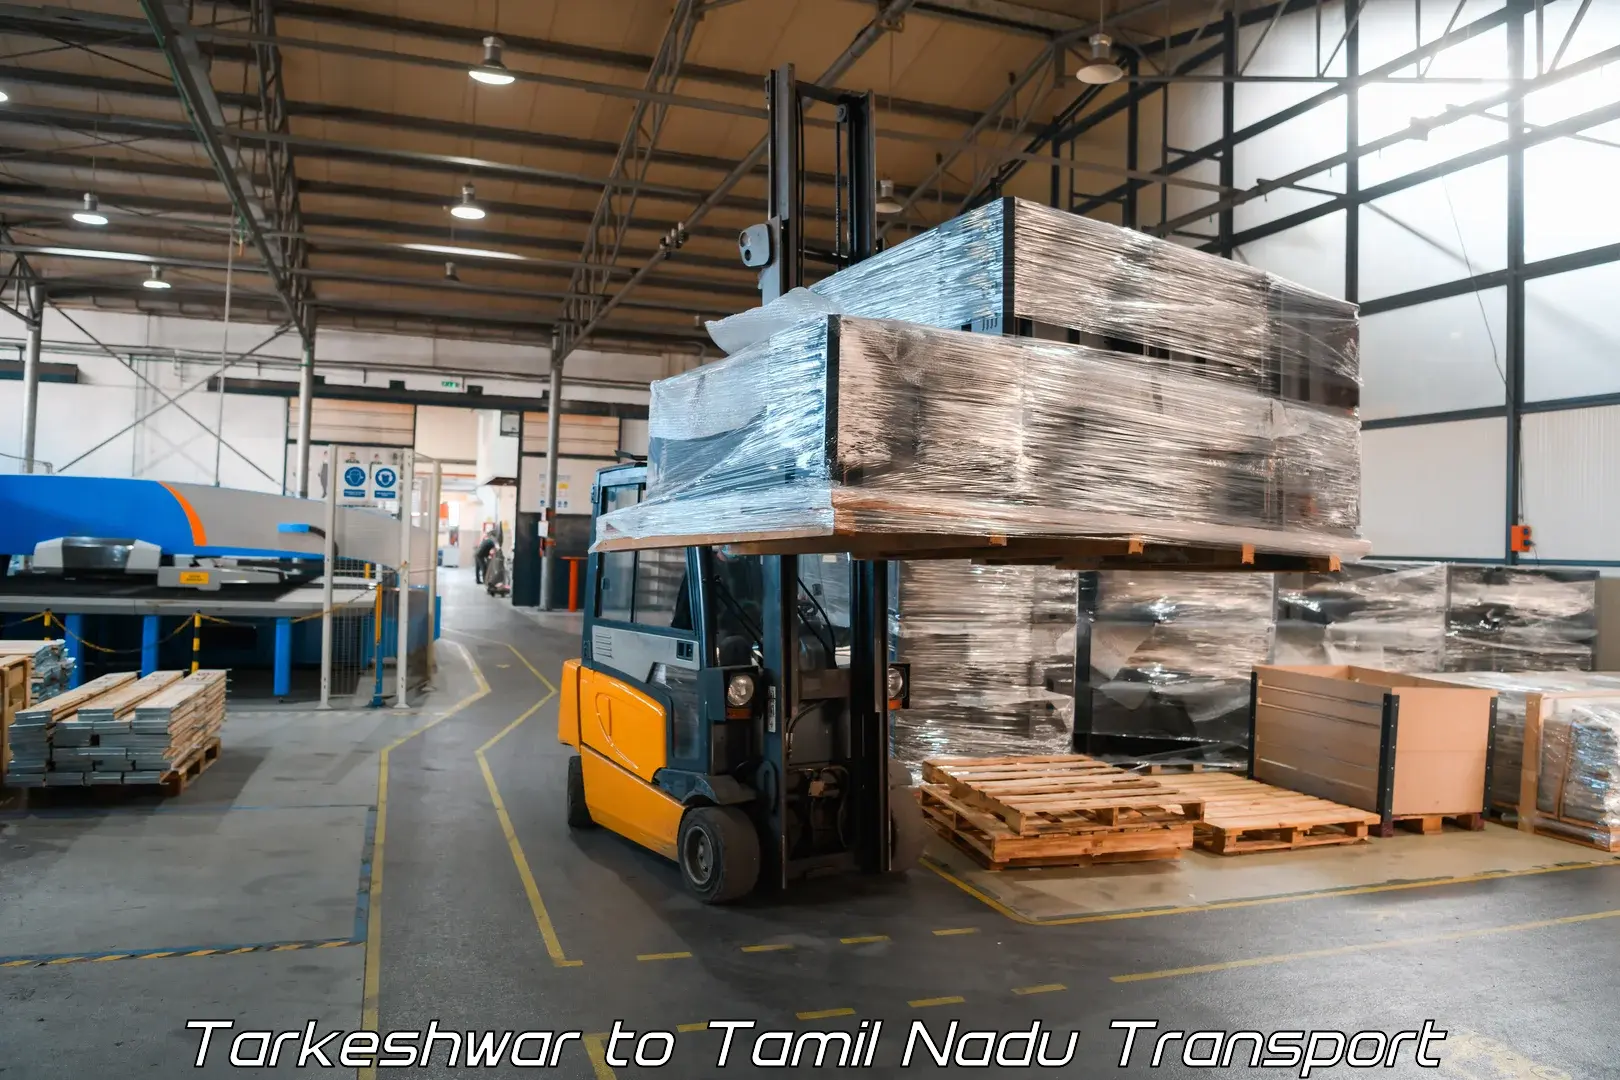 Daily parcel service transport Tarkeshwar to Tirunelveli